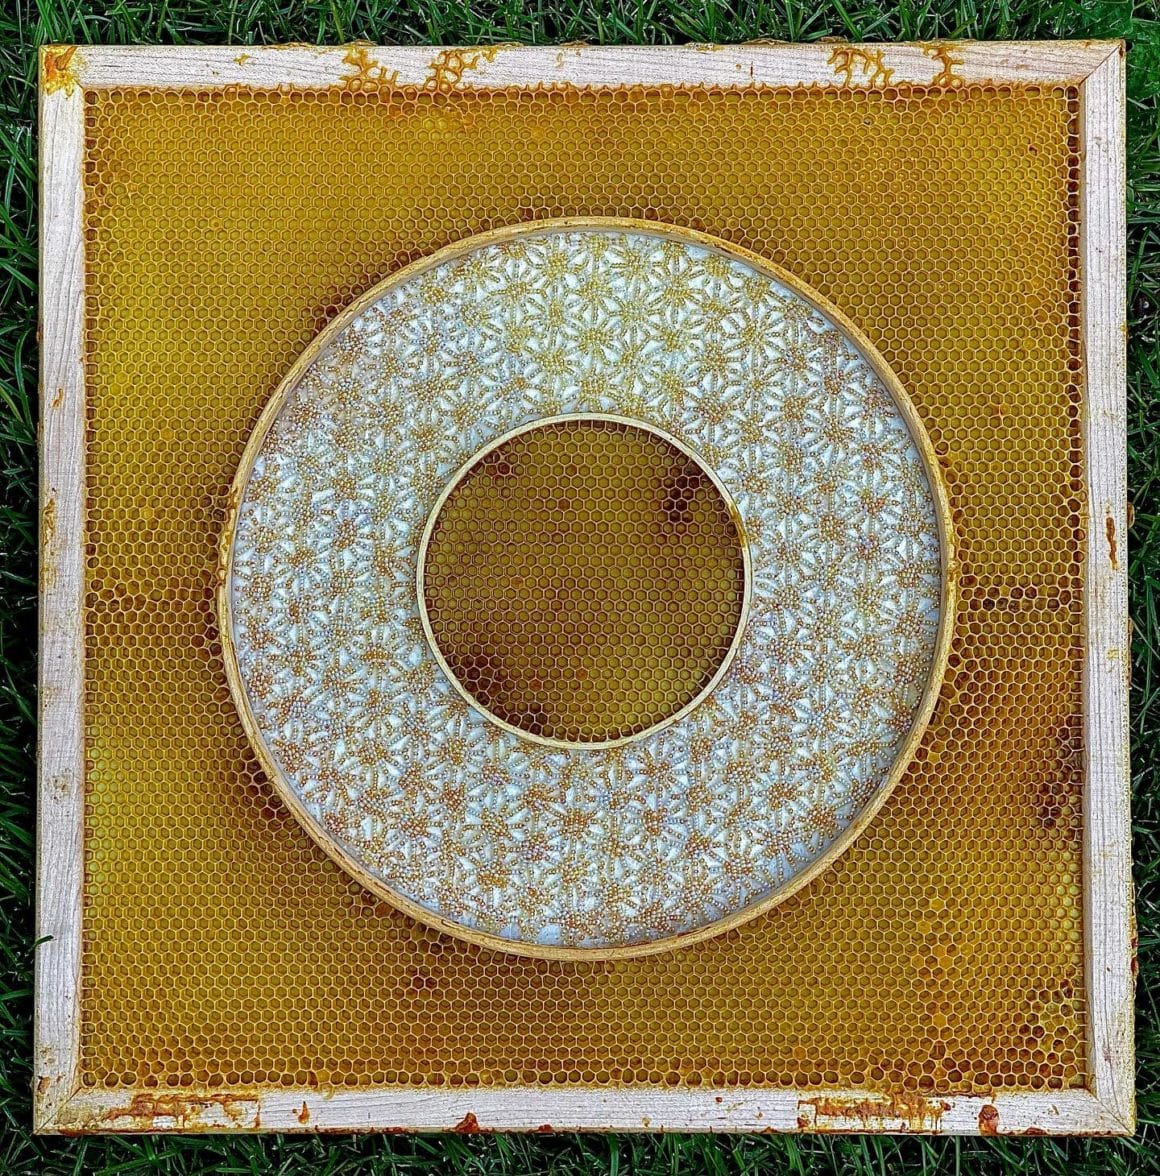 Cercle brodé avec des perles dorées entouré par les alvéoles d'une ruche